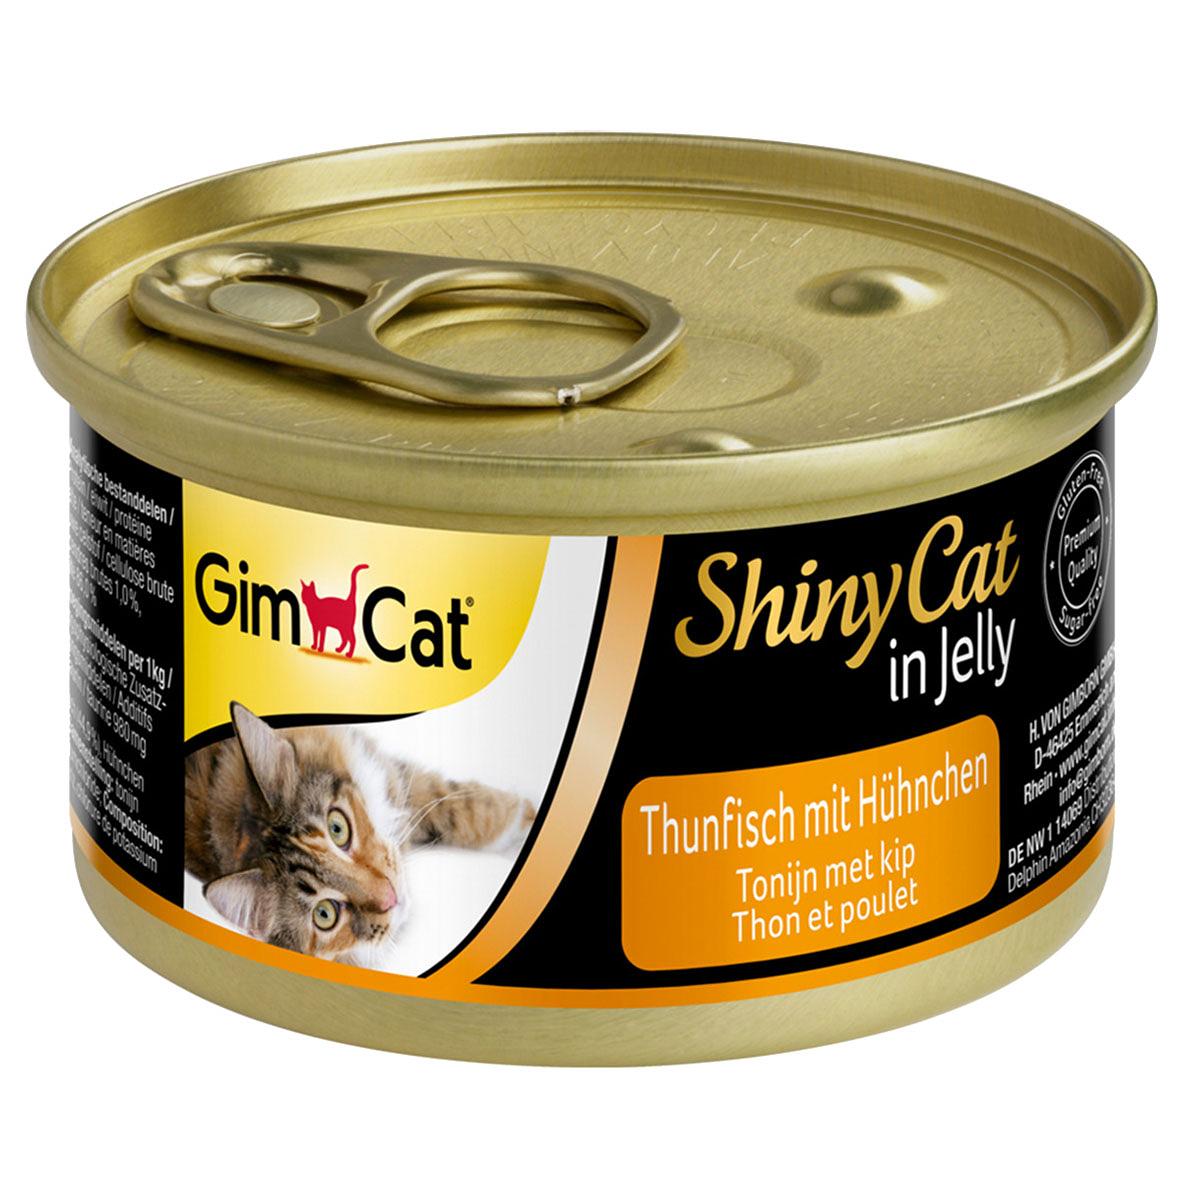 GimCat ShinyCat Thunfisch & Hühnchen, 6x70g